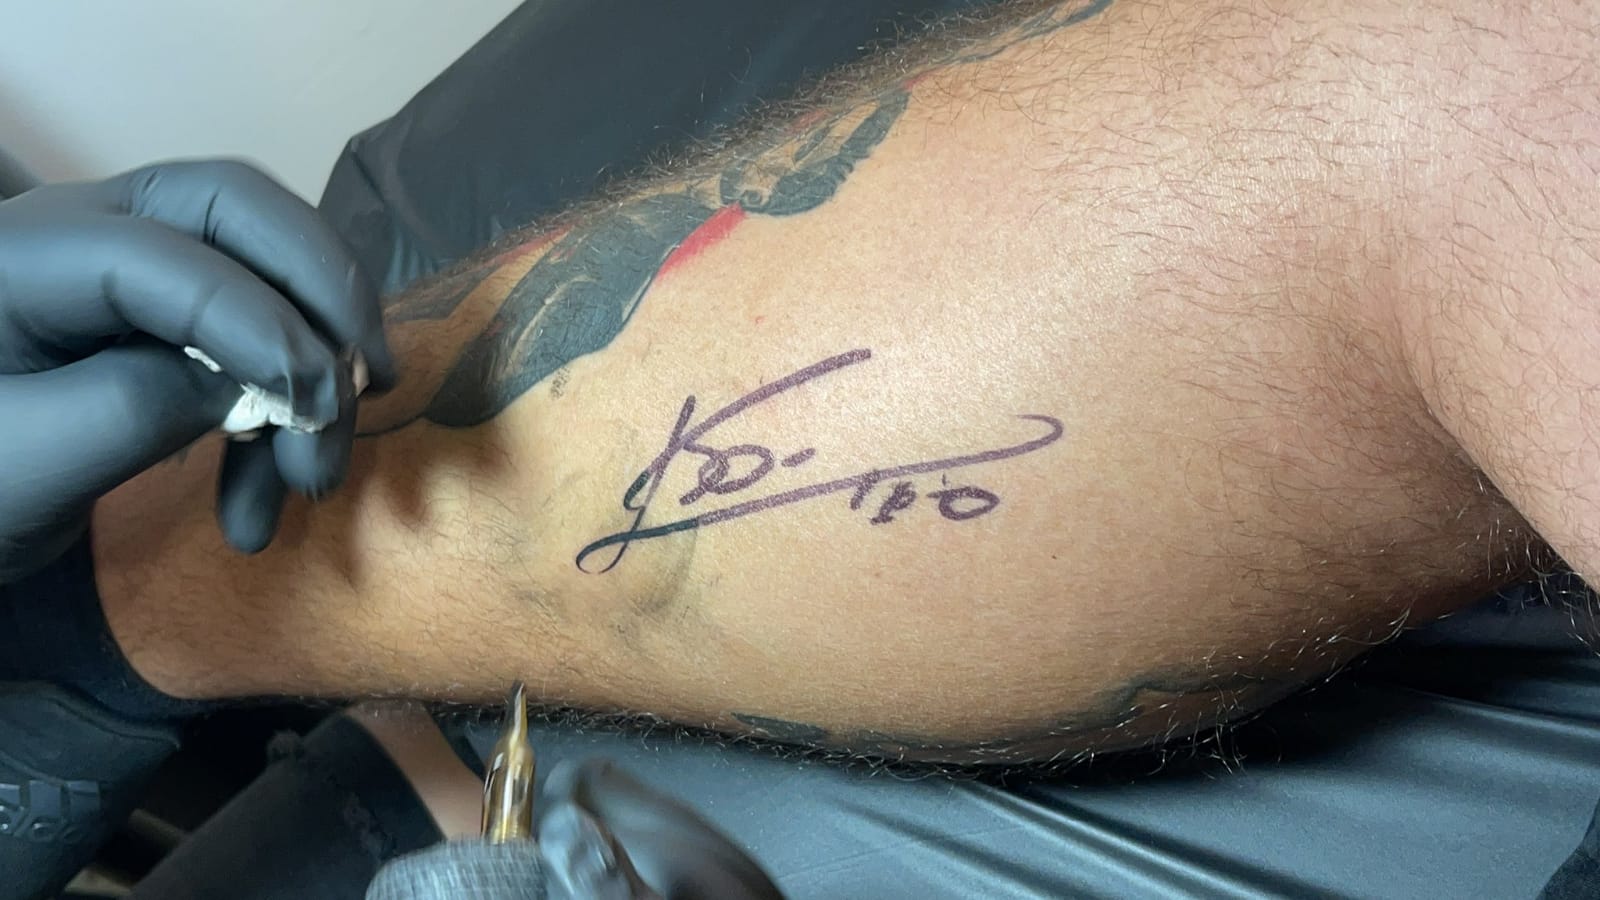 Sabía la hora exacta en que Messi llegaría a Miami y fue a su encuentro: inmortalizó el momento con un tatuaje